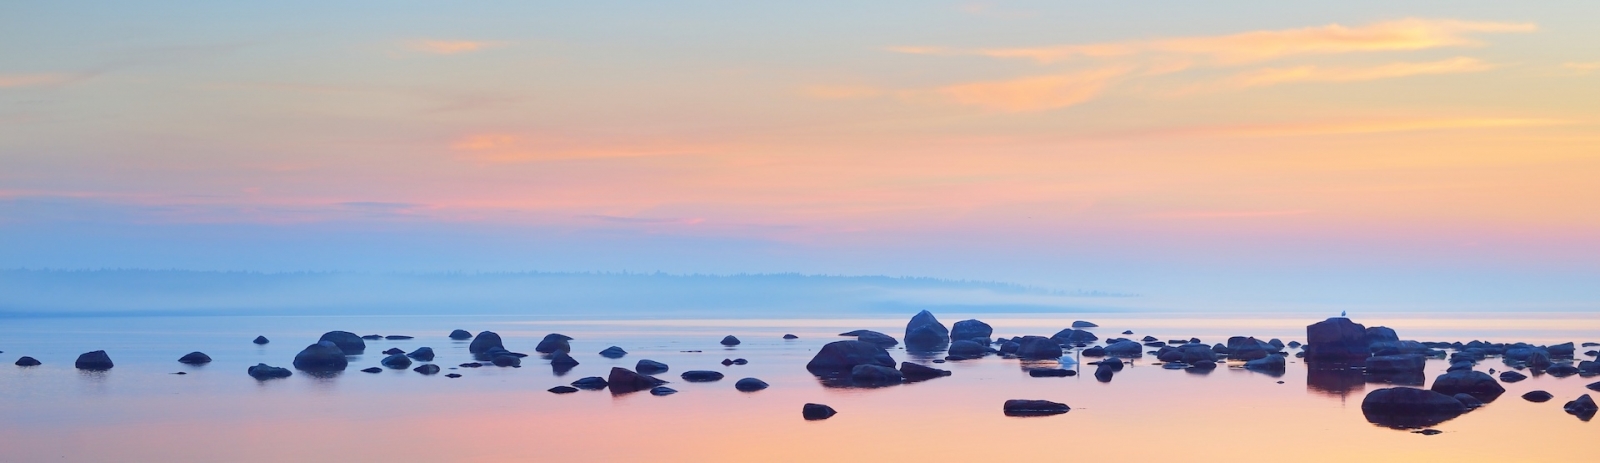 Felsen an der Küste von Kasmu (Kapitänsdorf) bei Sonnenuntergang.  Estland, Ostsee.  Klarer blauer Himmel, rosa Wolken.  Panoramablick.  Reiseziele, Urlaub, Ökotourismus